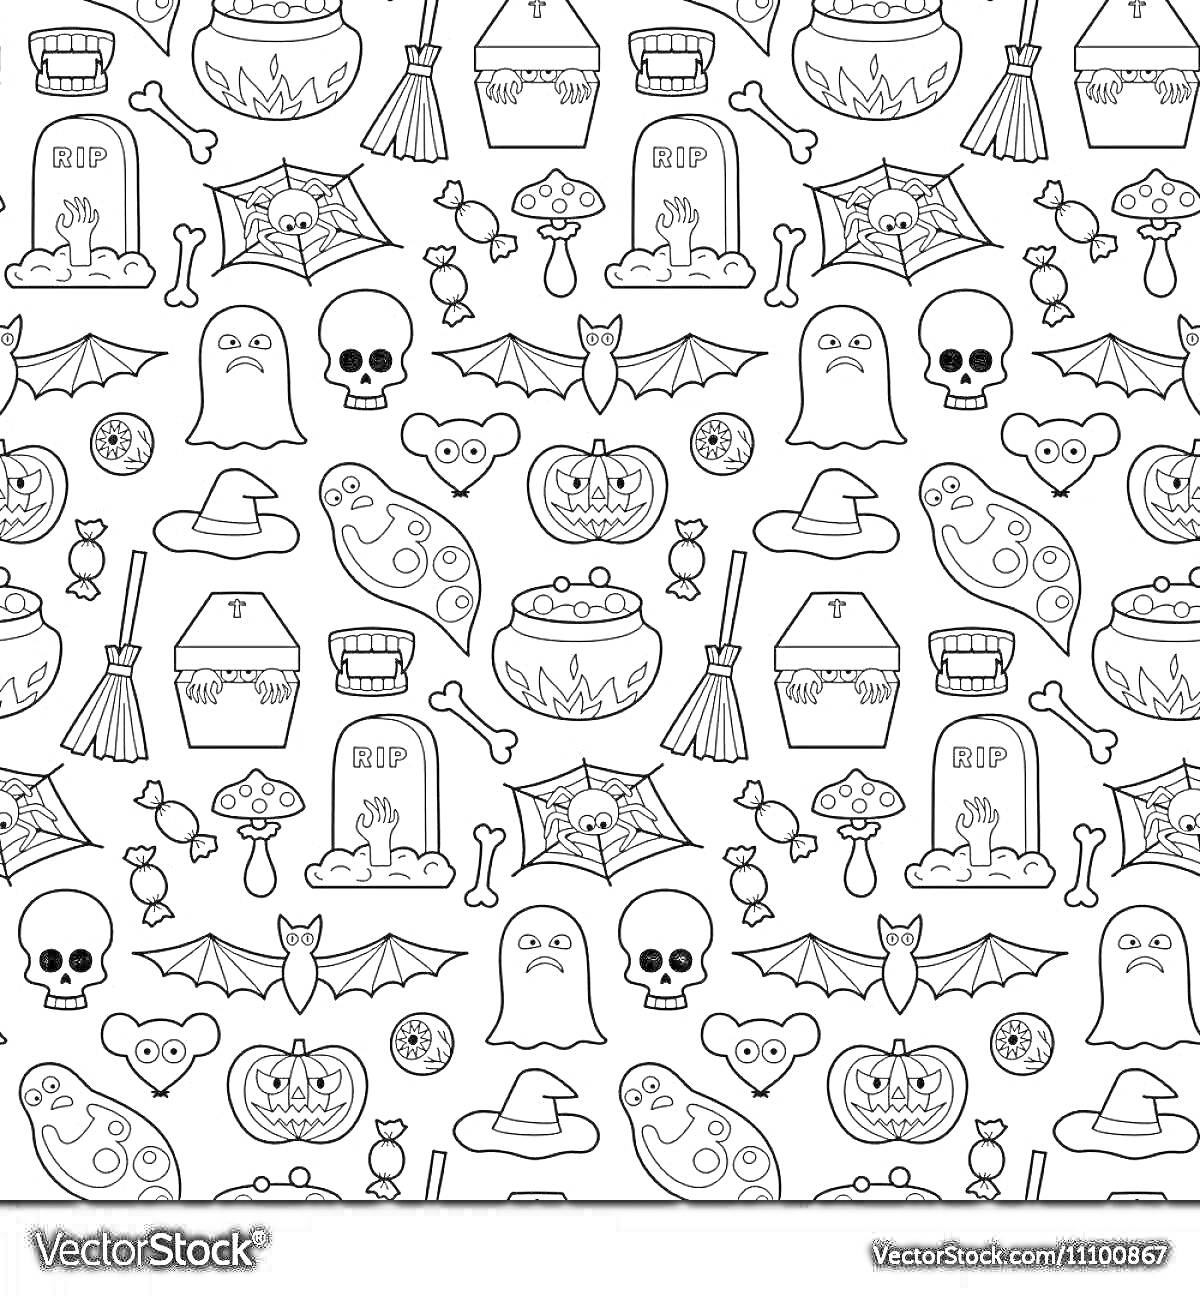 Раскраска элементы на тему Хэллоуин (летучие мыши, паутина, тыквы, привидения, черепа, зомби, ведьмыны шляпы, конфеты, магические шары, могильные плиты, метлы, зелья, кошачьи головы)